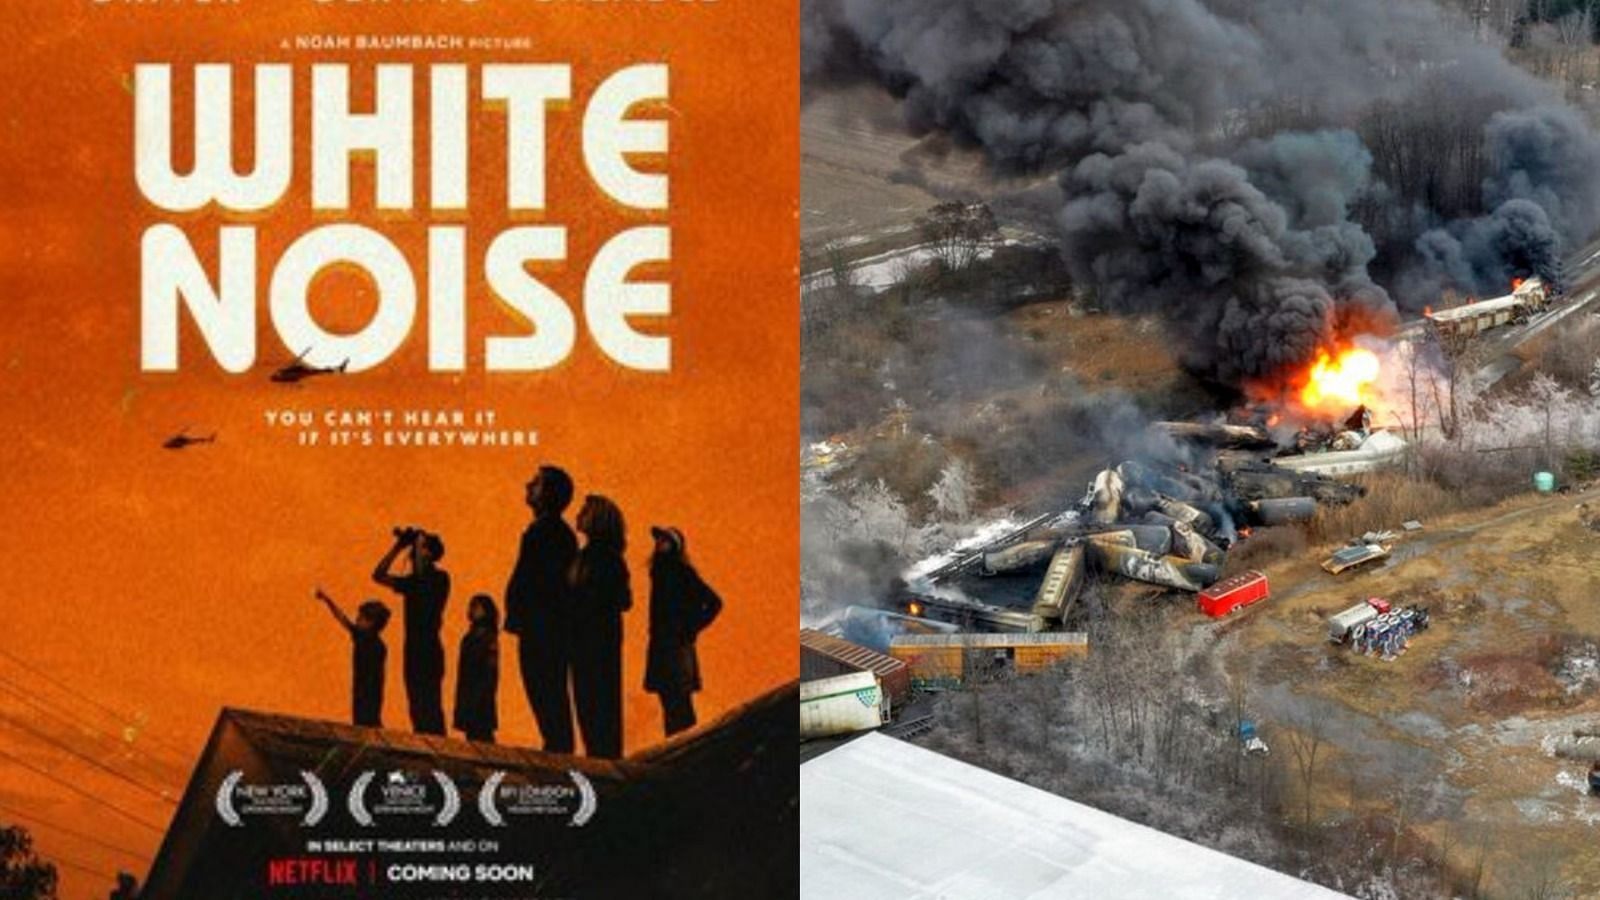 White Noise had a similar plot line to Ohio